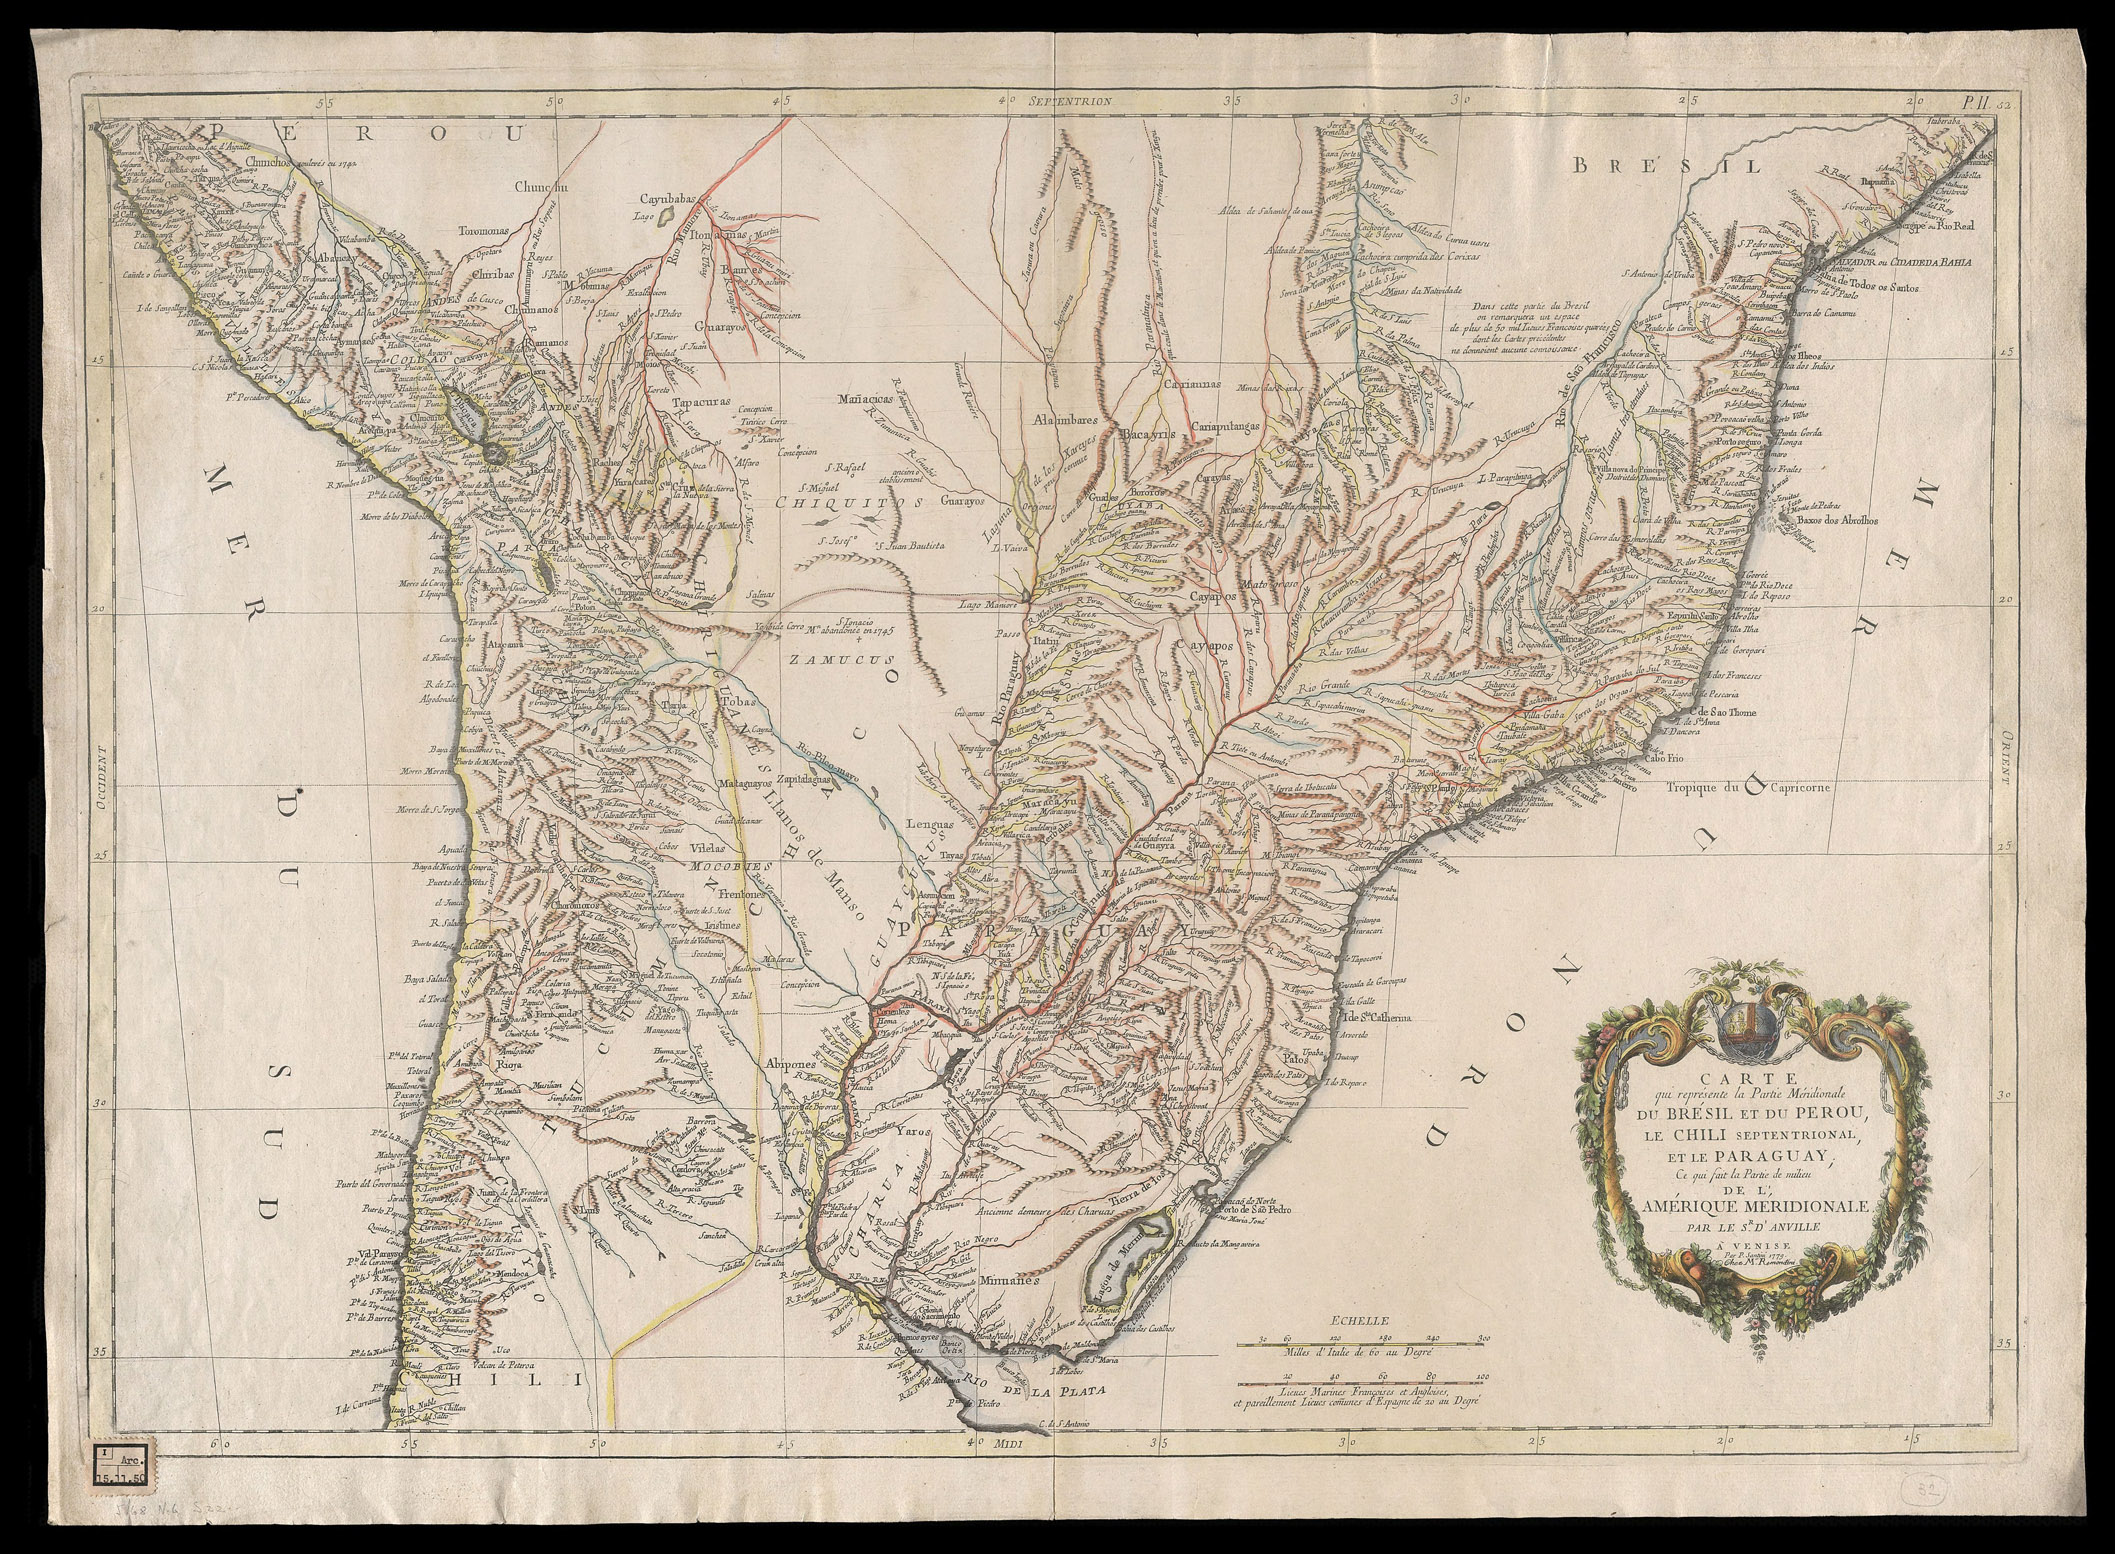 Carte Brésil, Pérou, Chilix, Paraguay. 1779